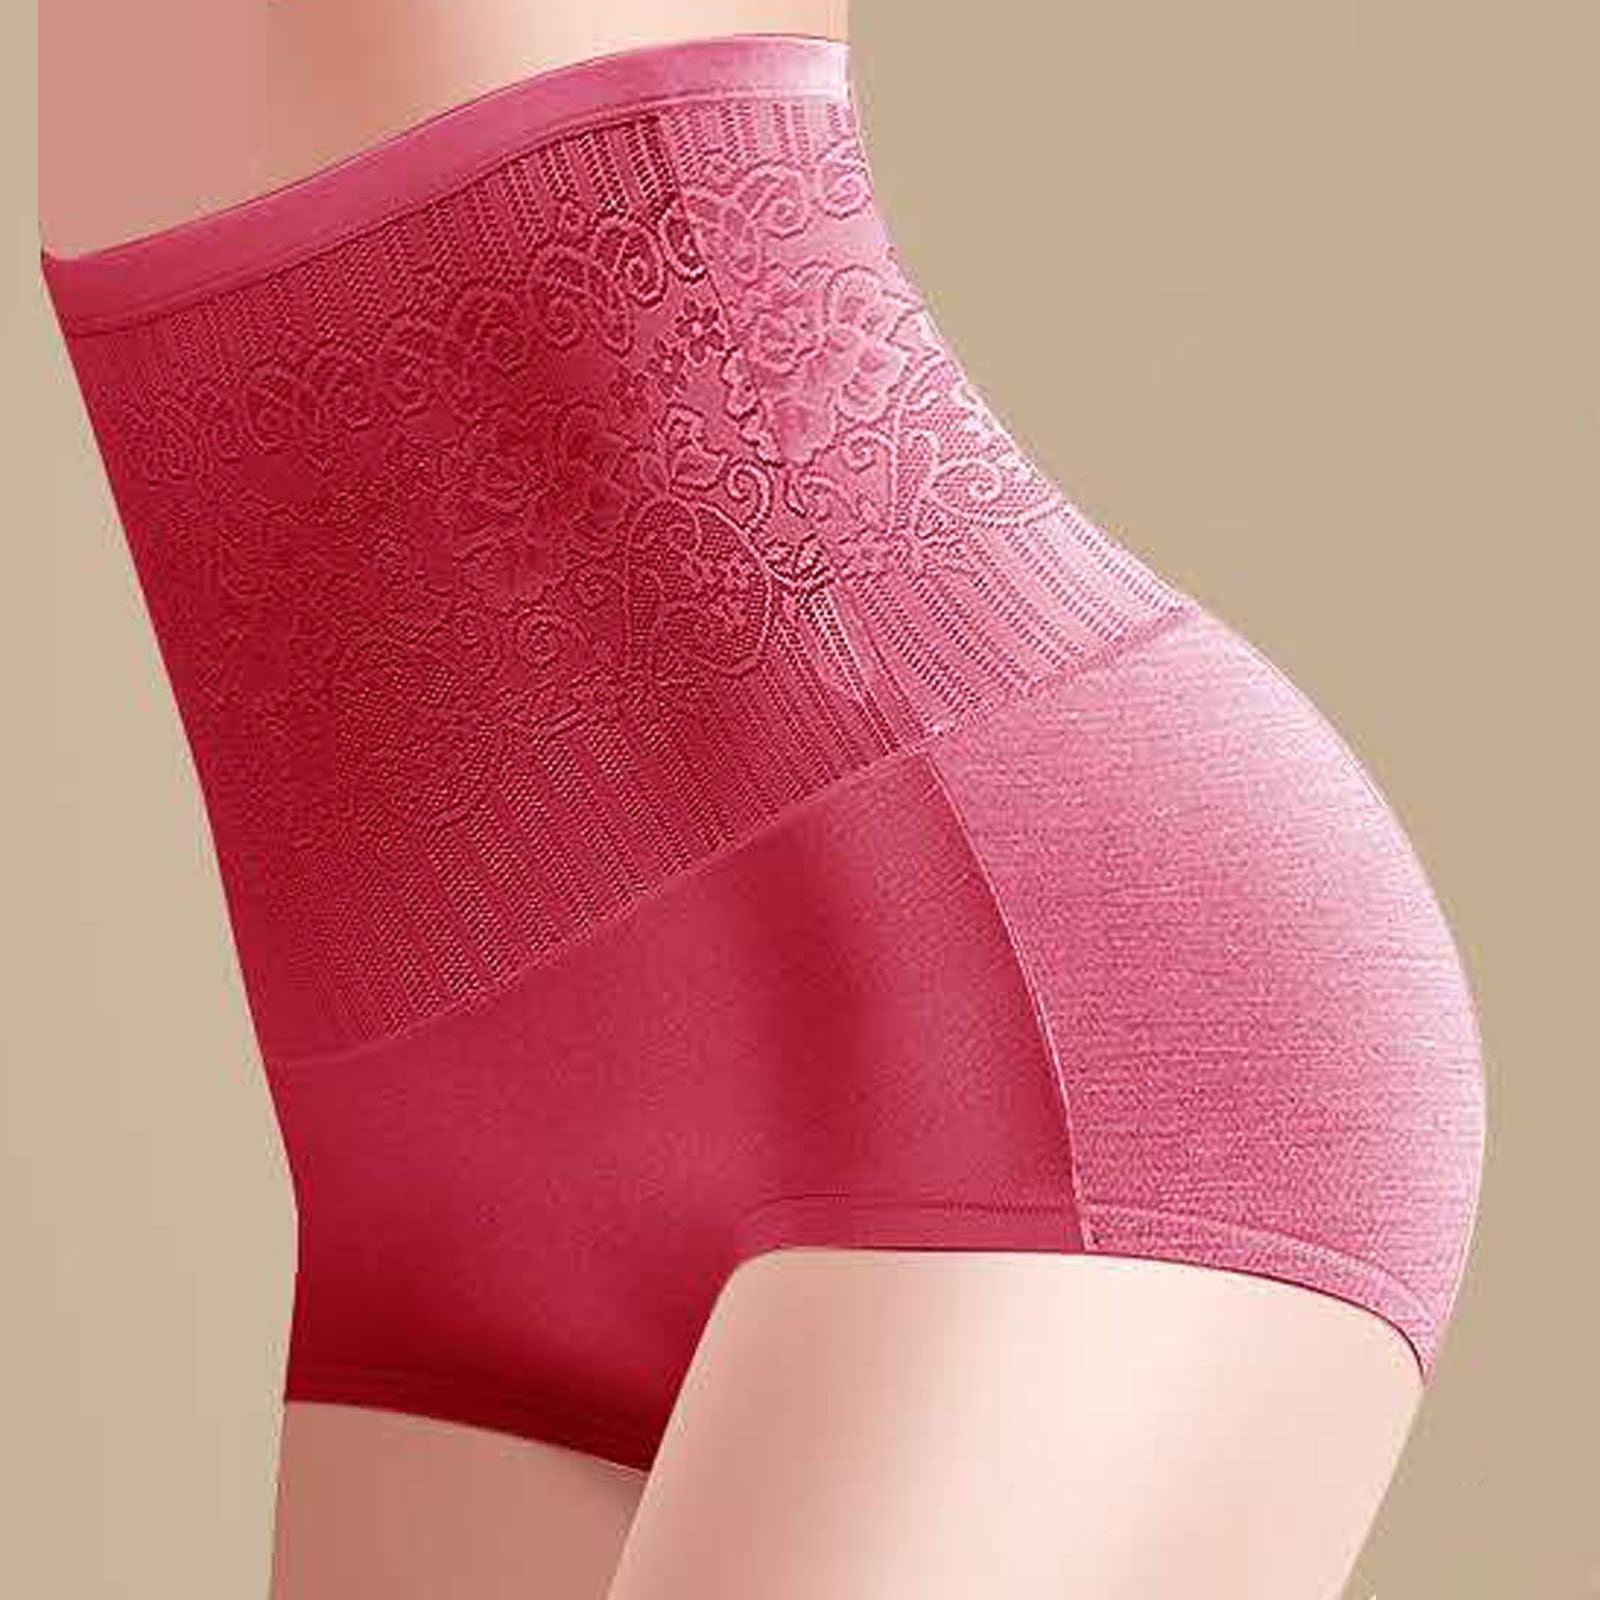 DISOLVE Womens Underwear Cotton Briefs - High Waist Tummy Control Panties  for Women Postpartum Underwear Soft Size (40 Till 44) 4XL Pack of 3 Assorted